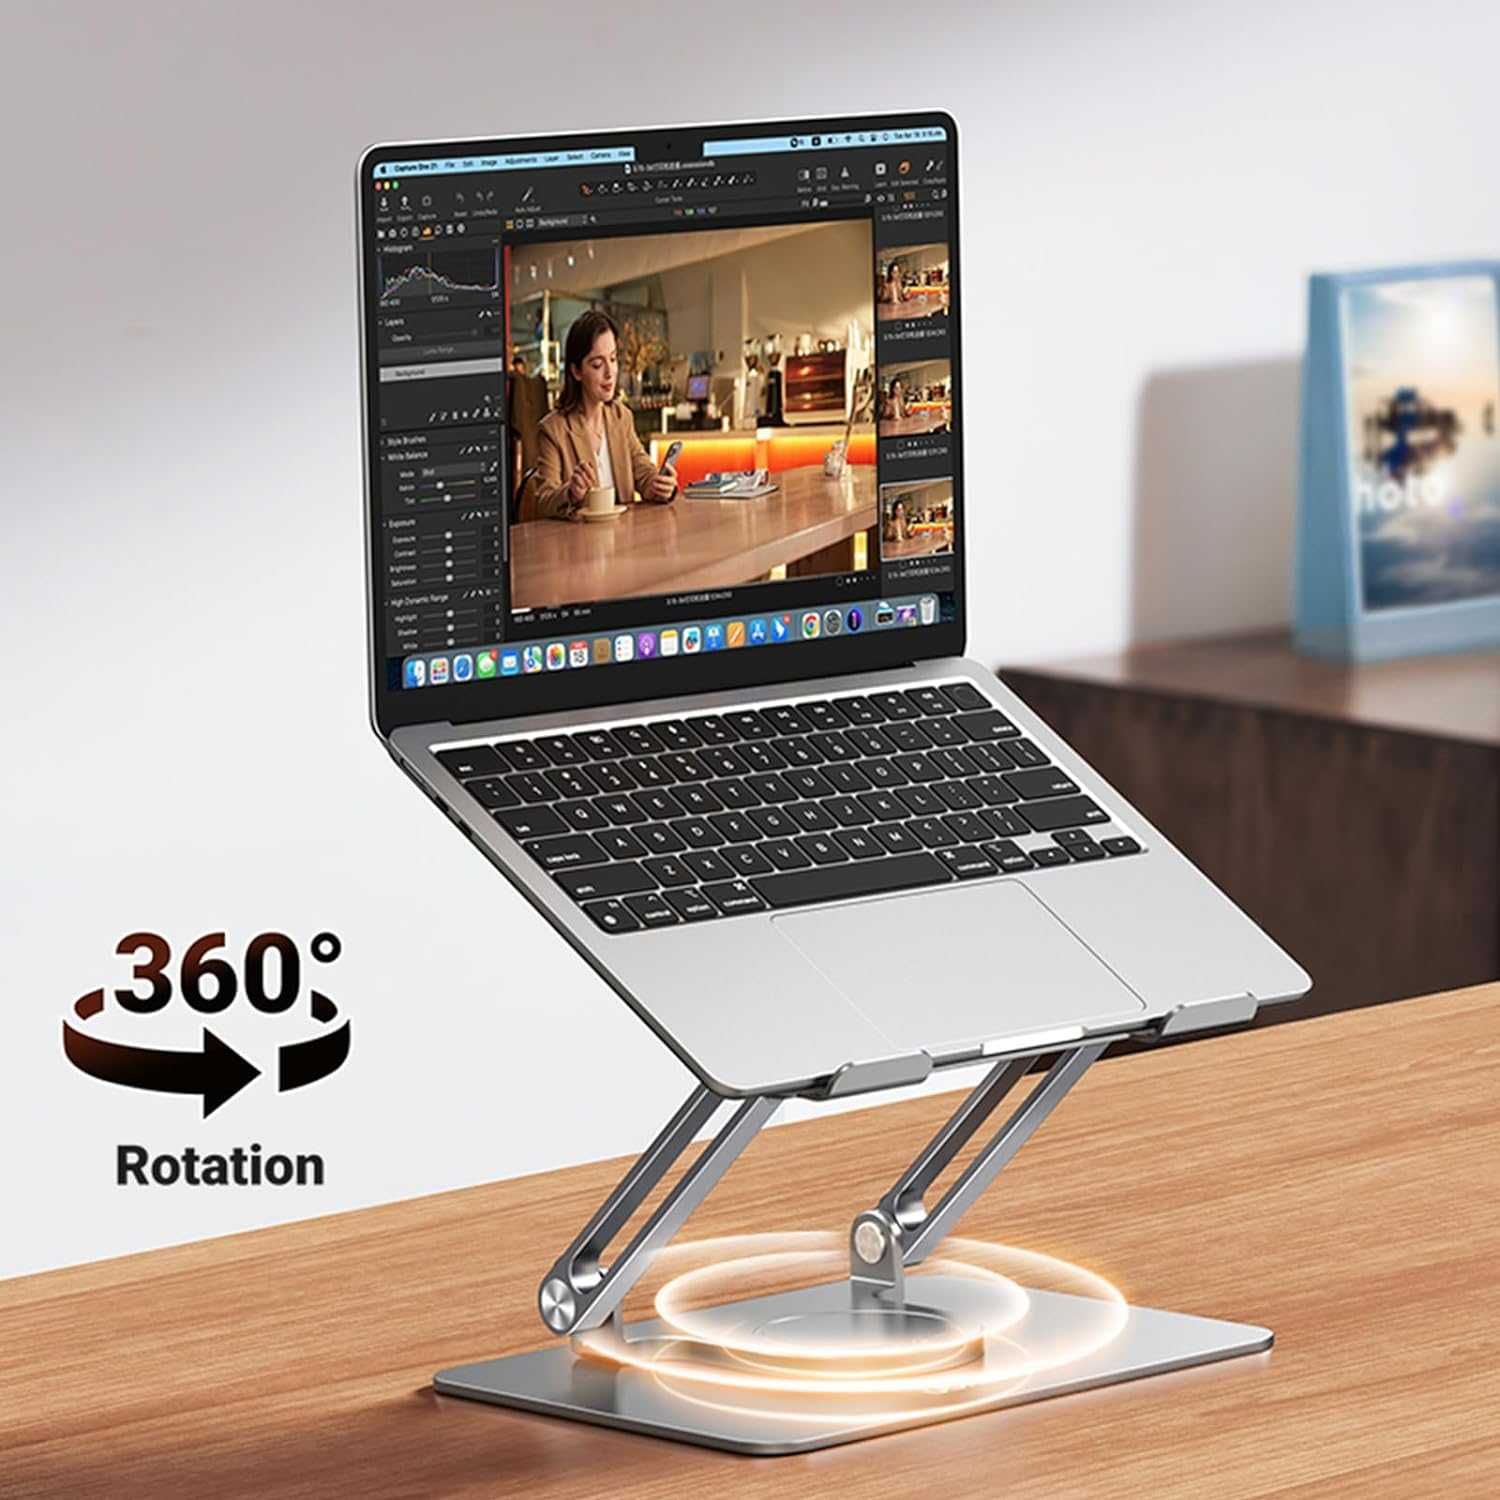 UGREEN 25289 Stojak na laptopa z aluminiowym uchwytem obrotowym 360°